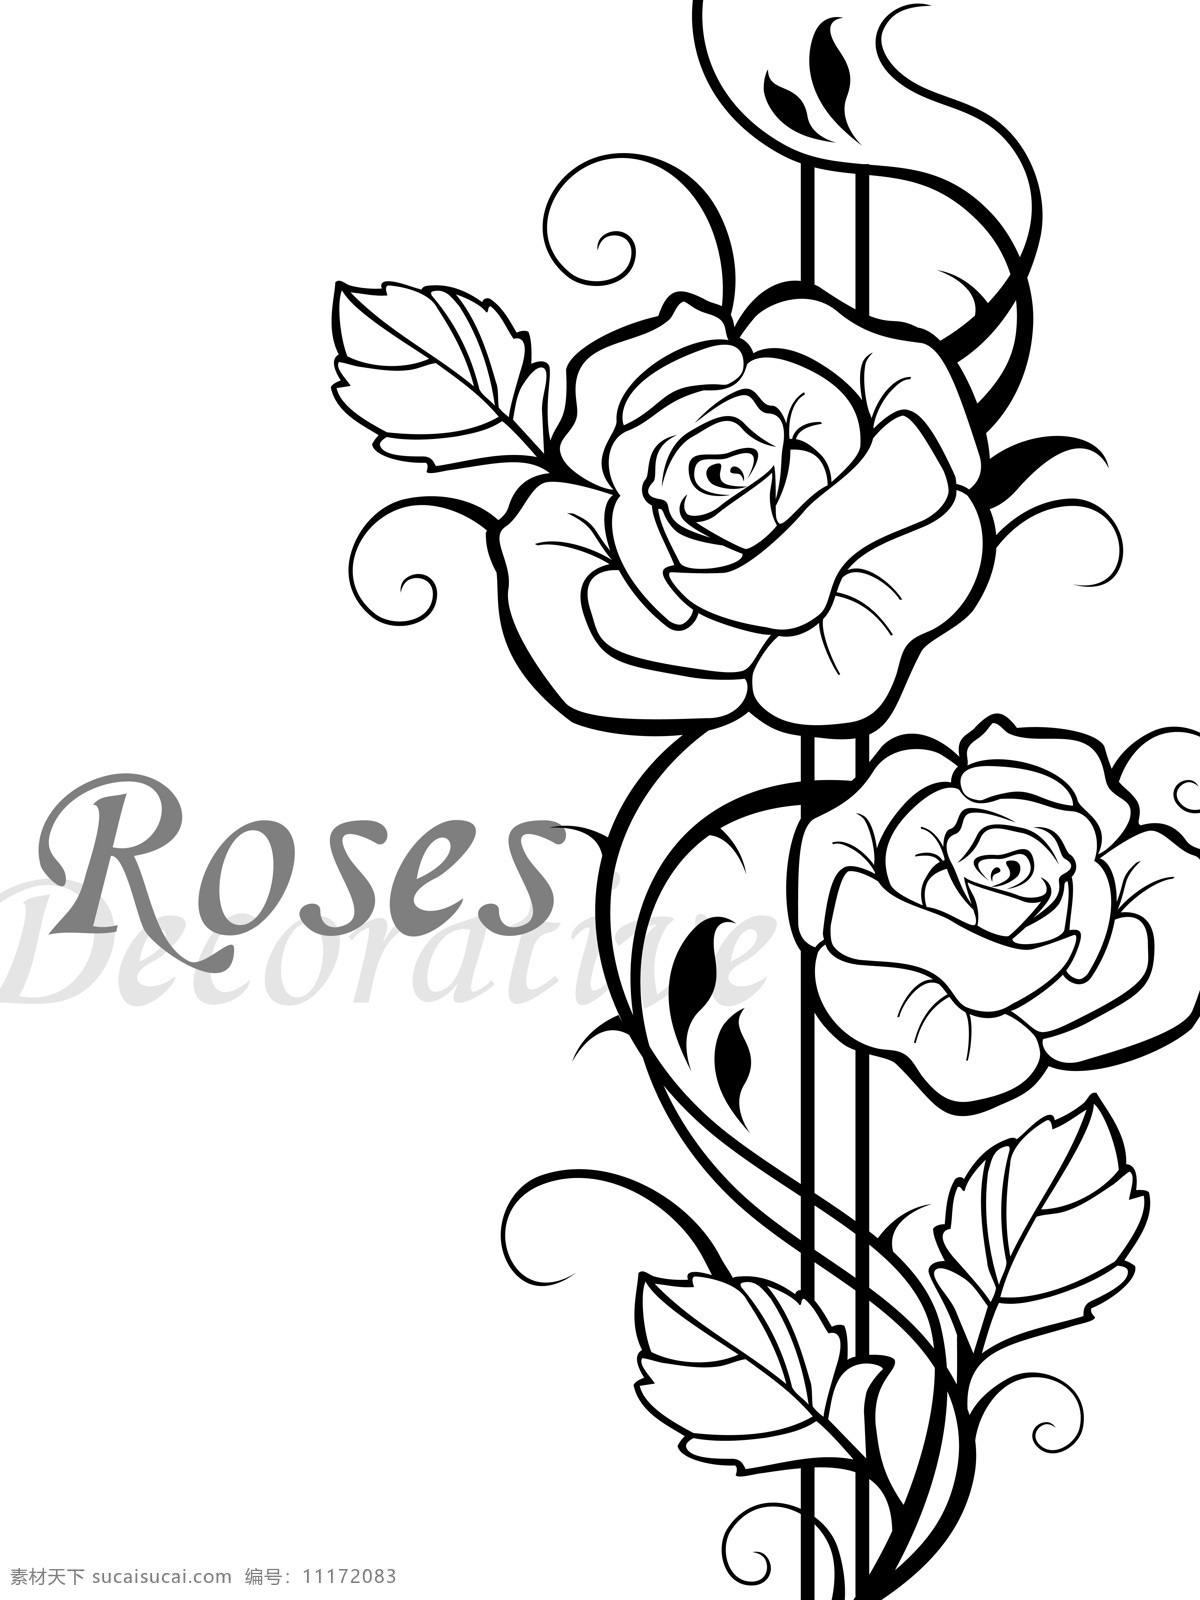 玫瑰 roses 2朵玫瑰花 妖娆 带刺的玫瑰 黑白 线条 移门图案 底纹边框